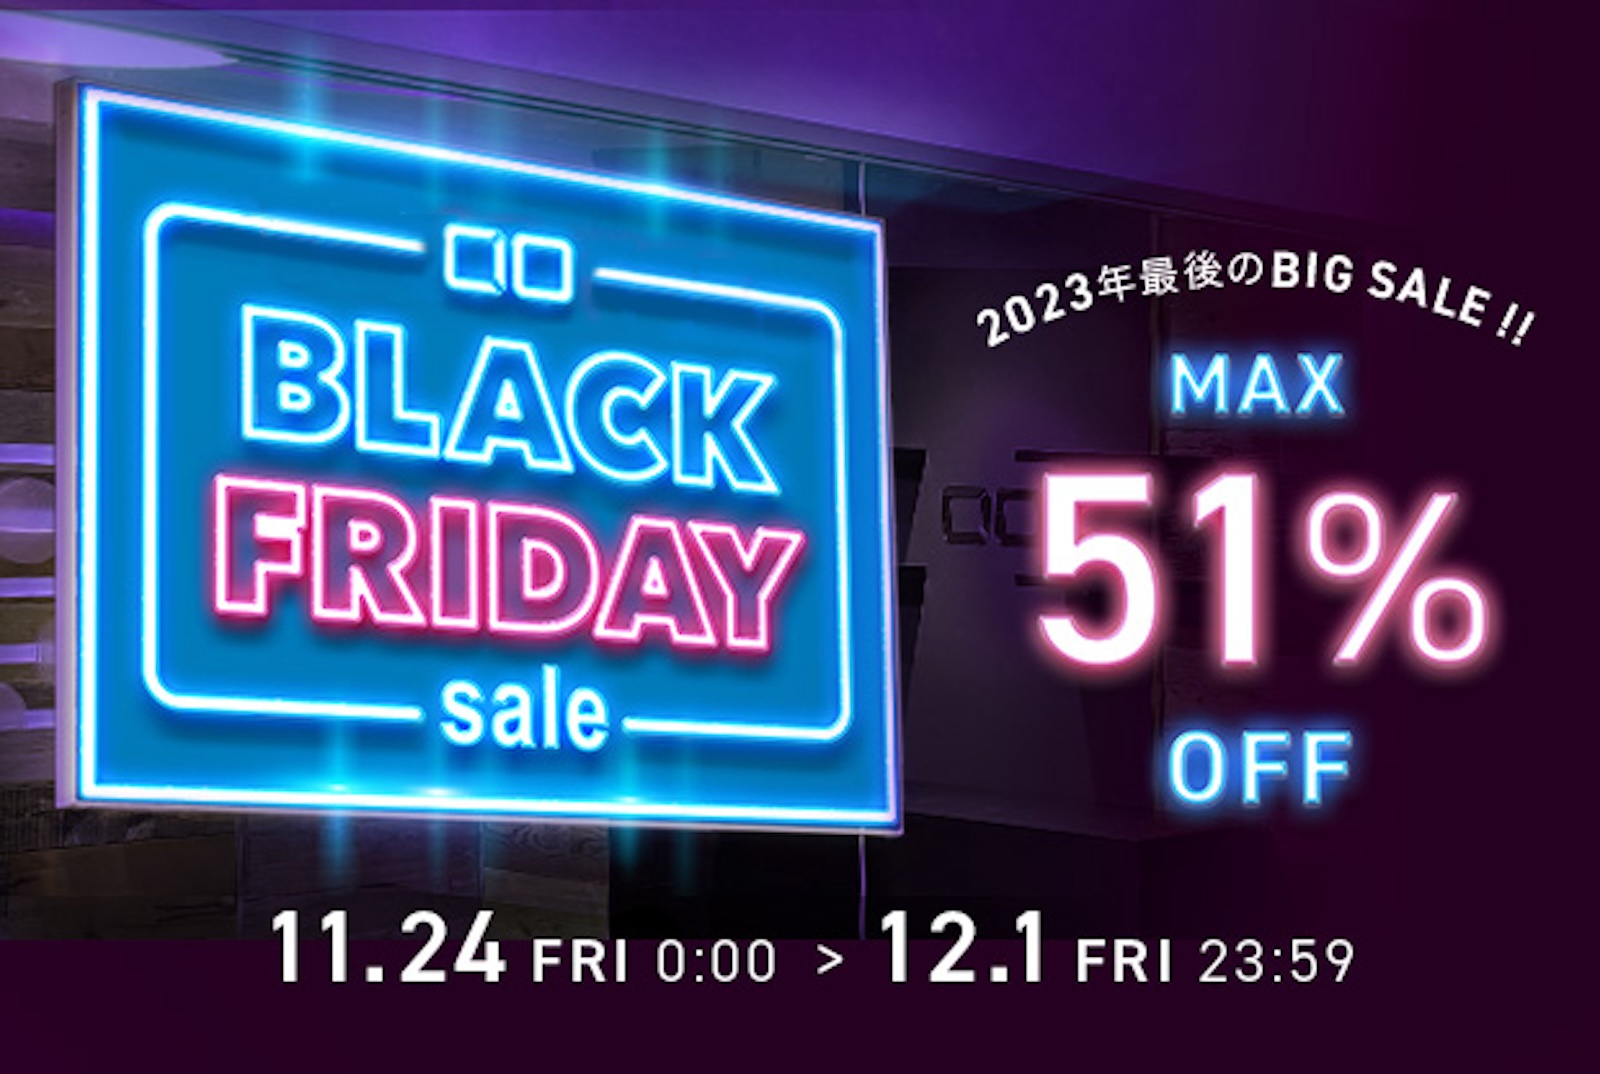 CIO Black Friday Sale